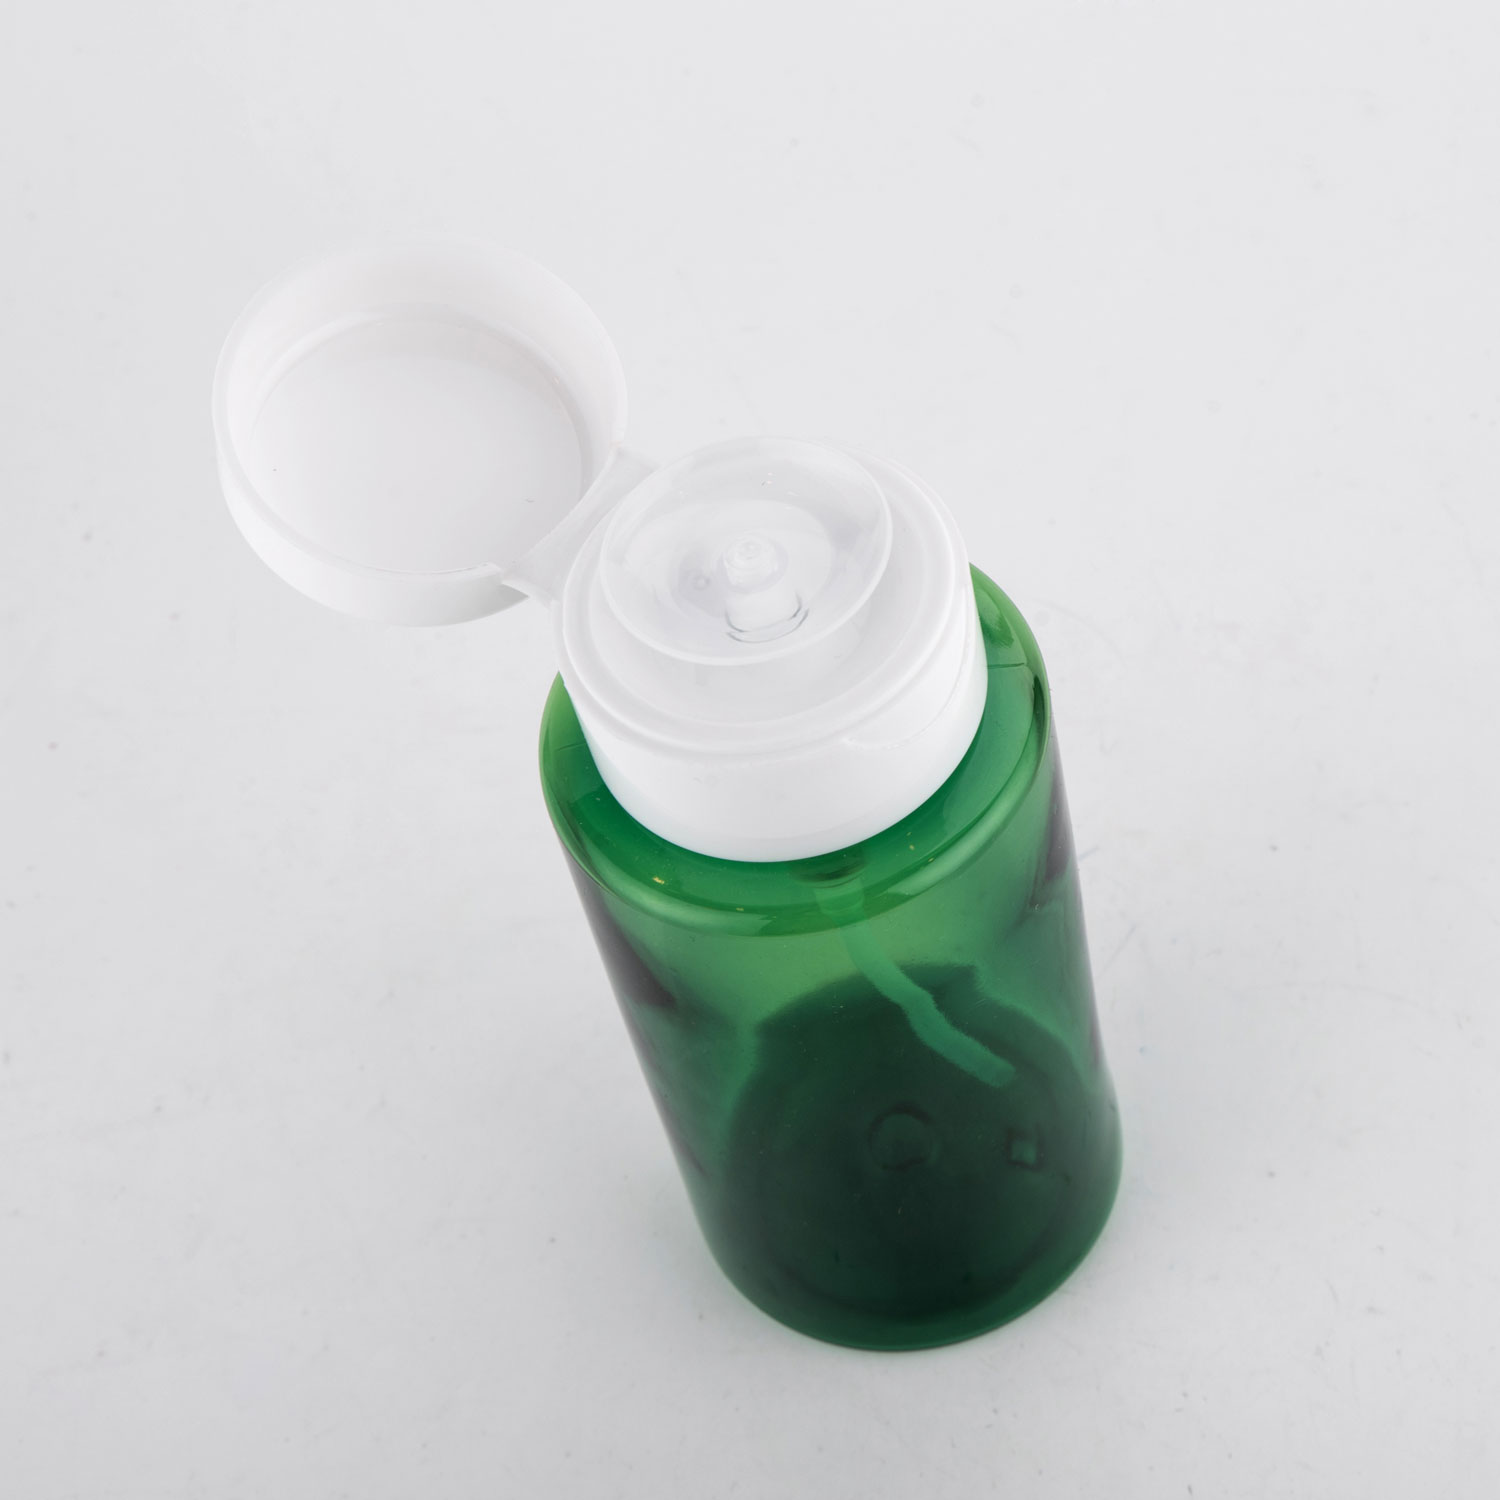 Niedriger Preis Transparente blaue Farbe 250ml PET Leere Lotionsflasche Verpackung